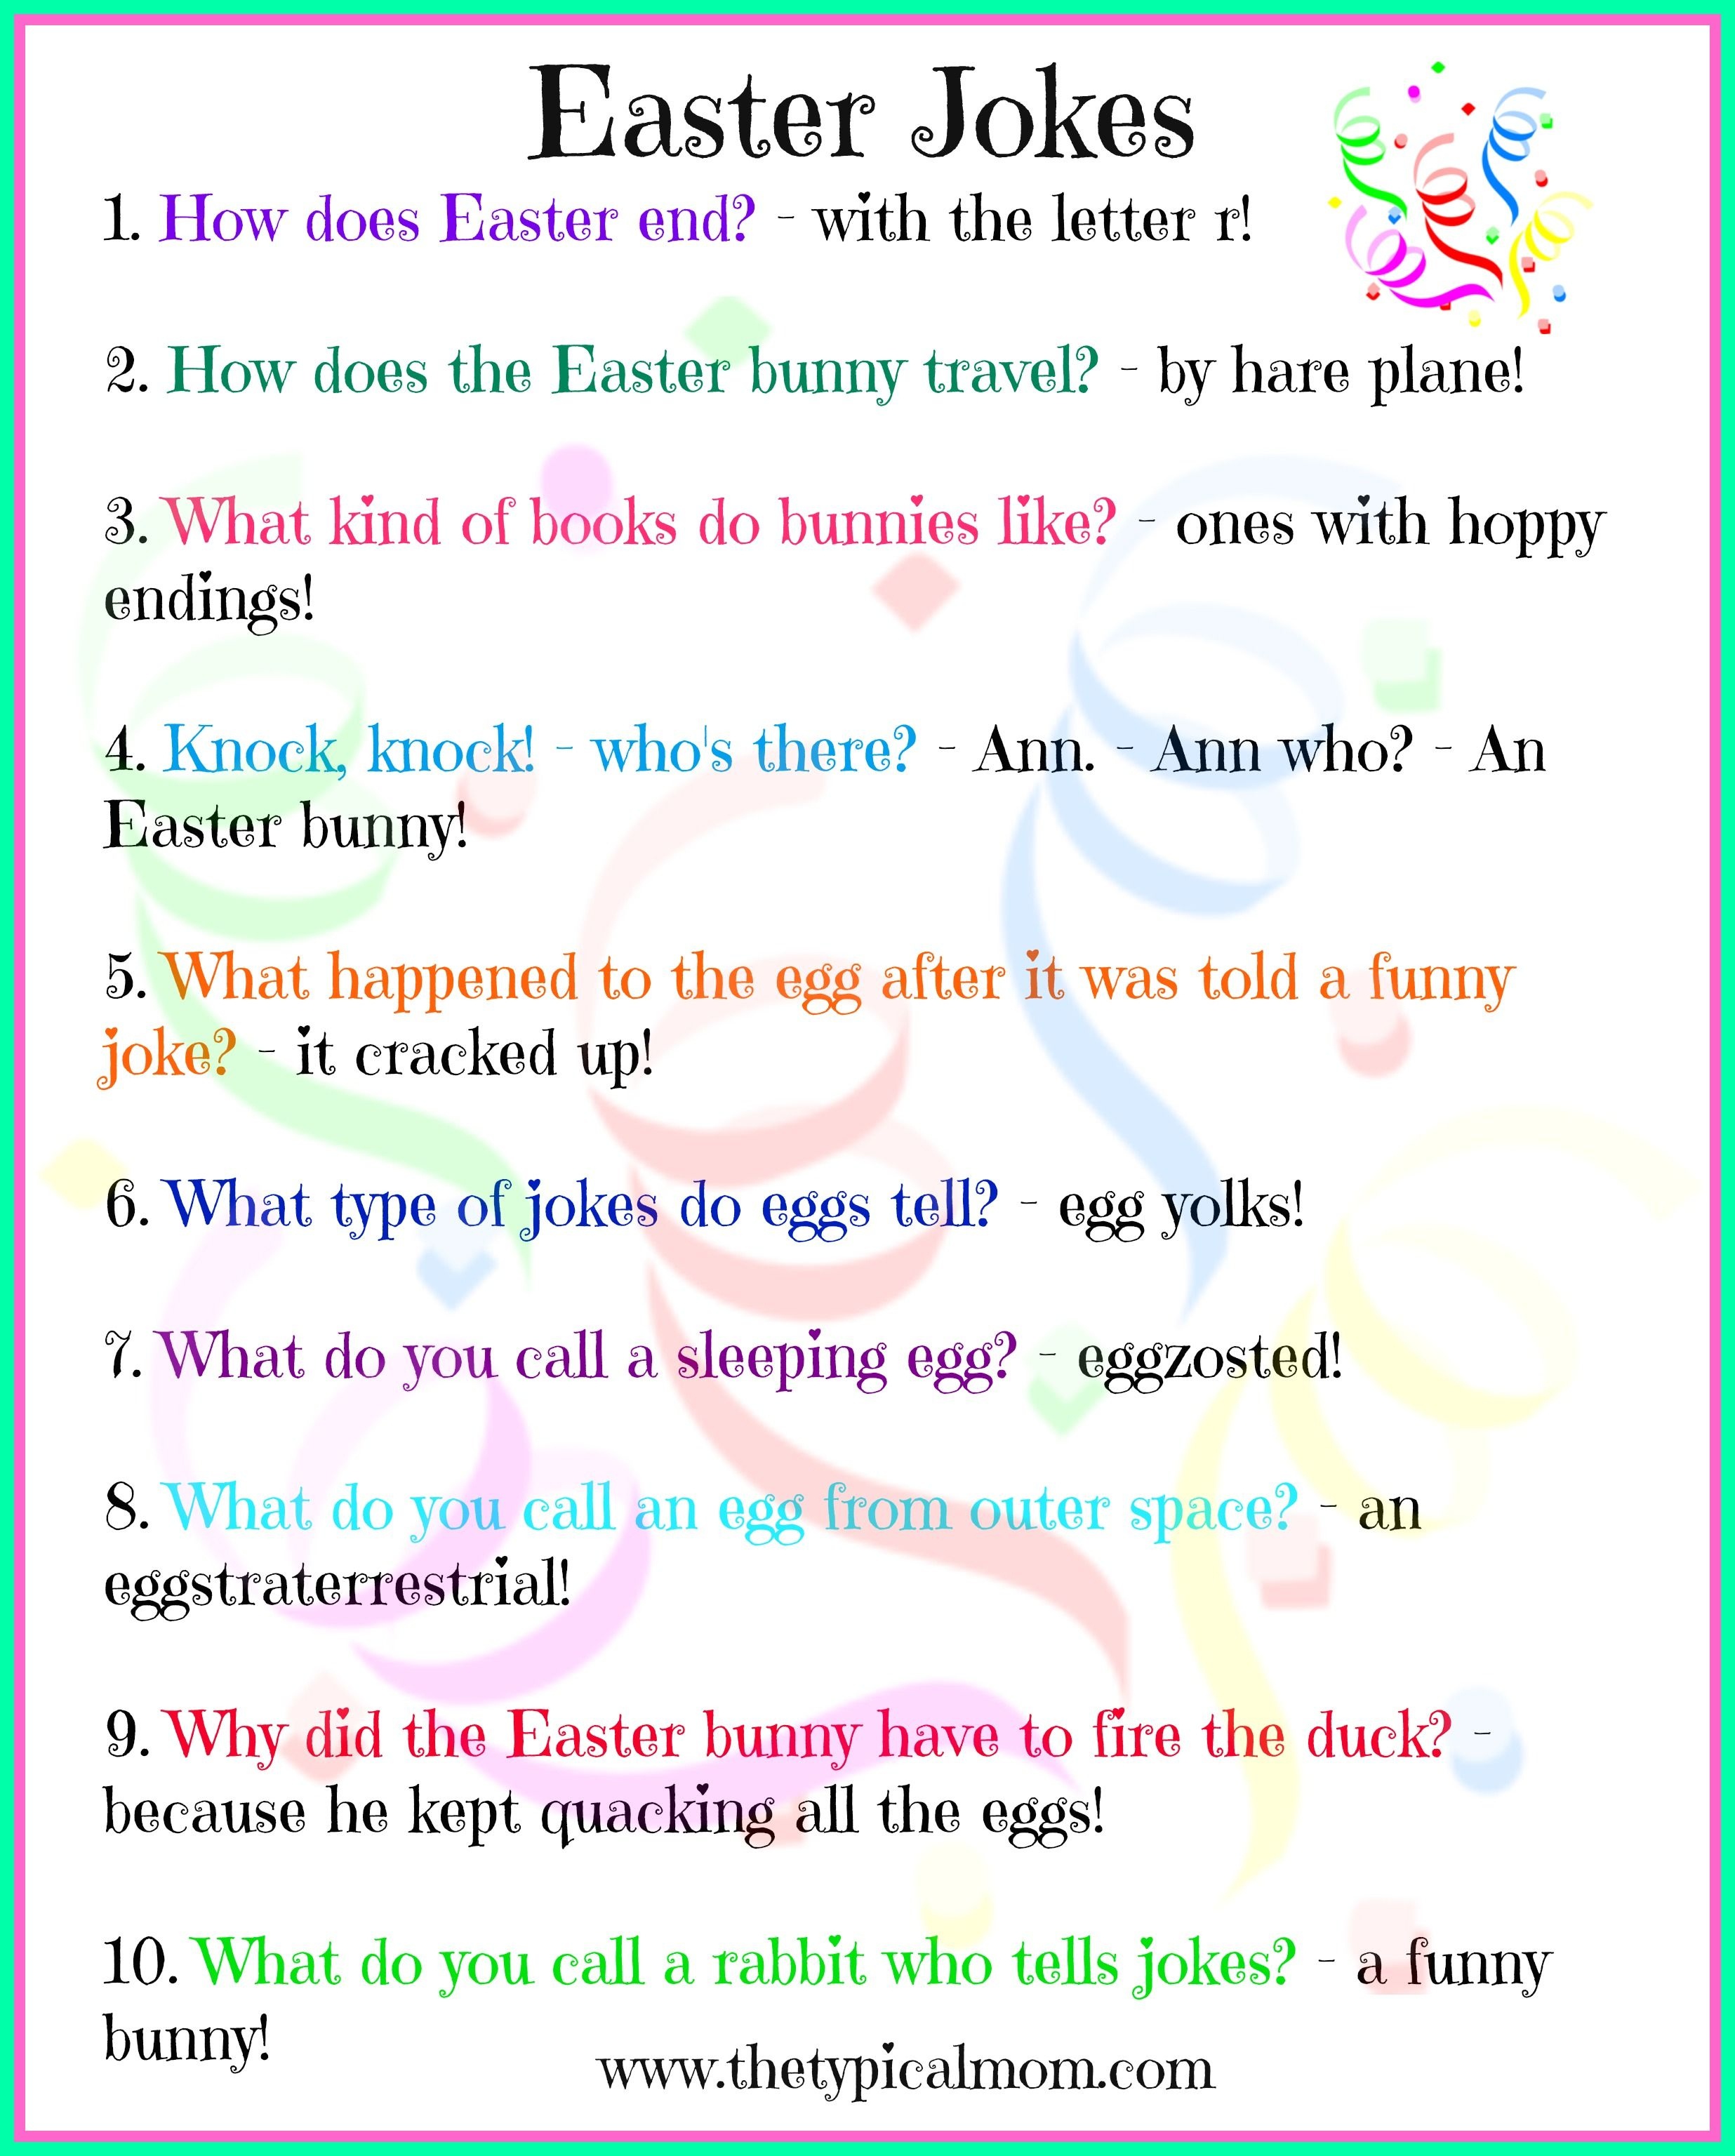 Free Printable Easter Jokes For Kids! Kids Love Jokes And Here Are - Free Printable Jokes For Adults